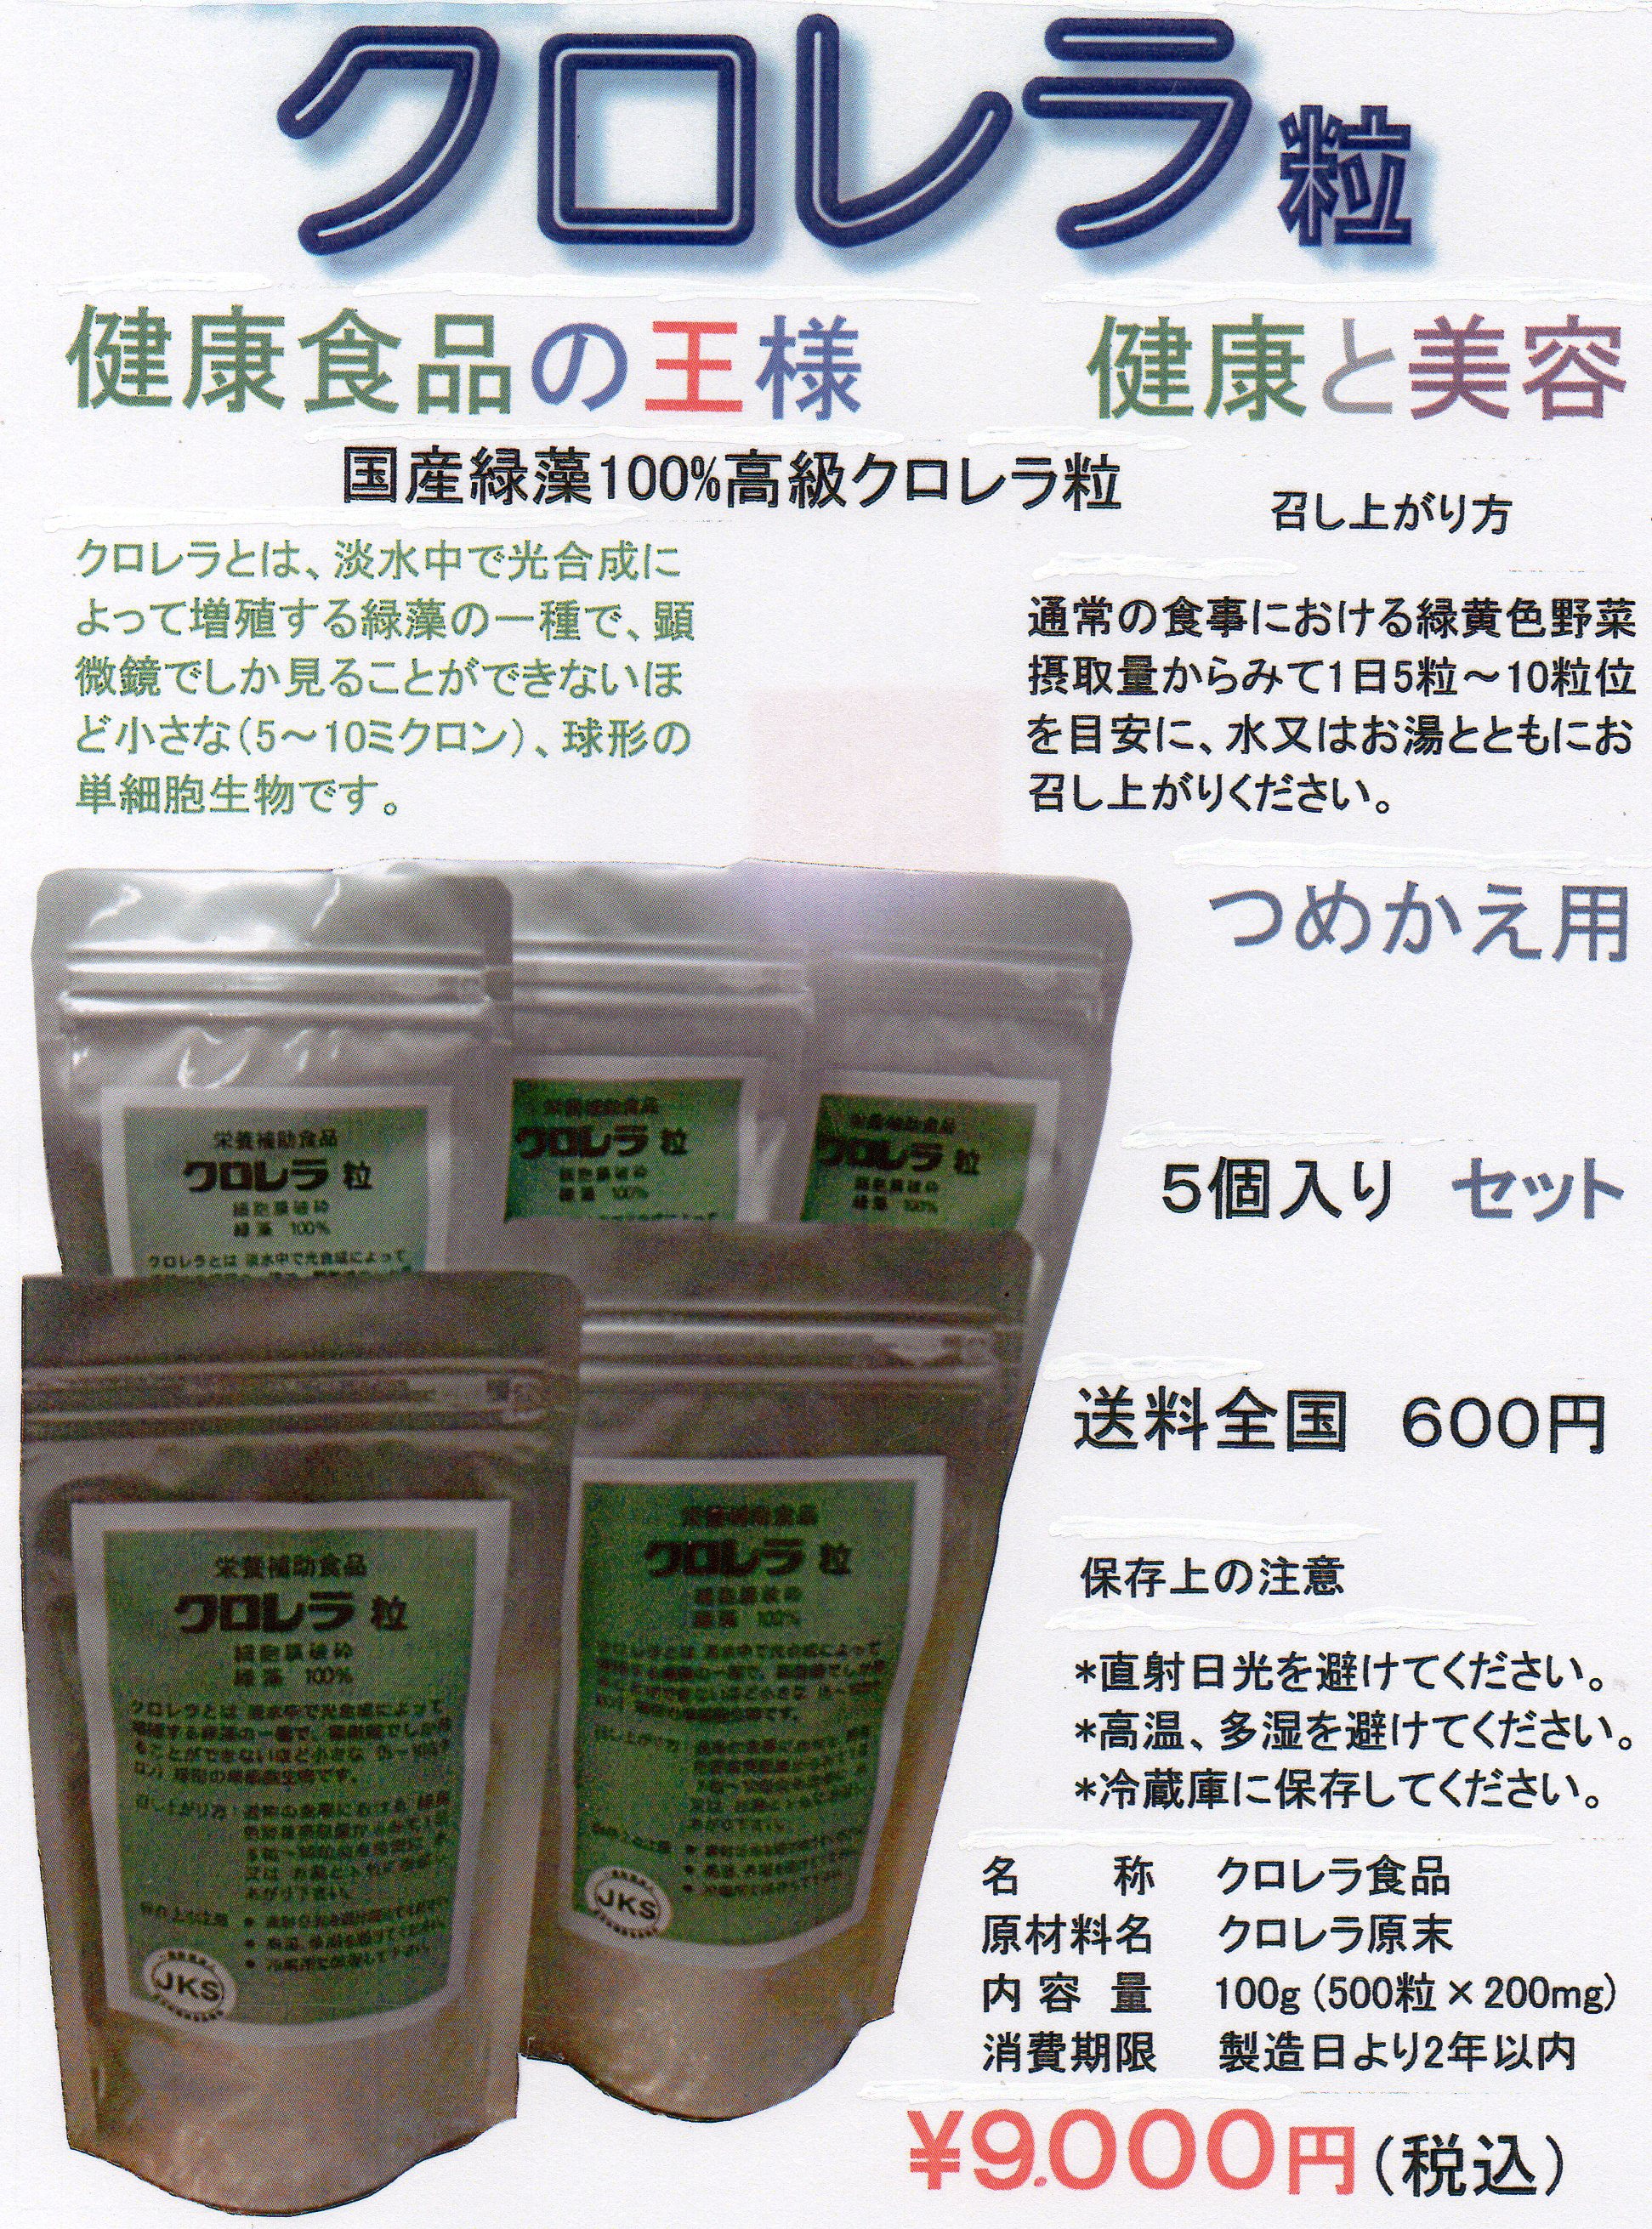 福井県 クロレラ 栄養補助食品 健康食品 クロレラエイト